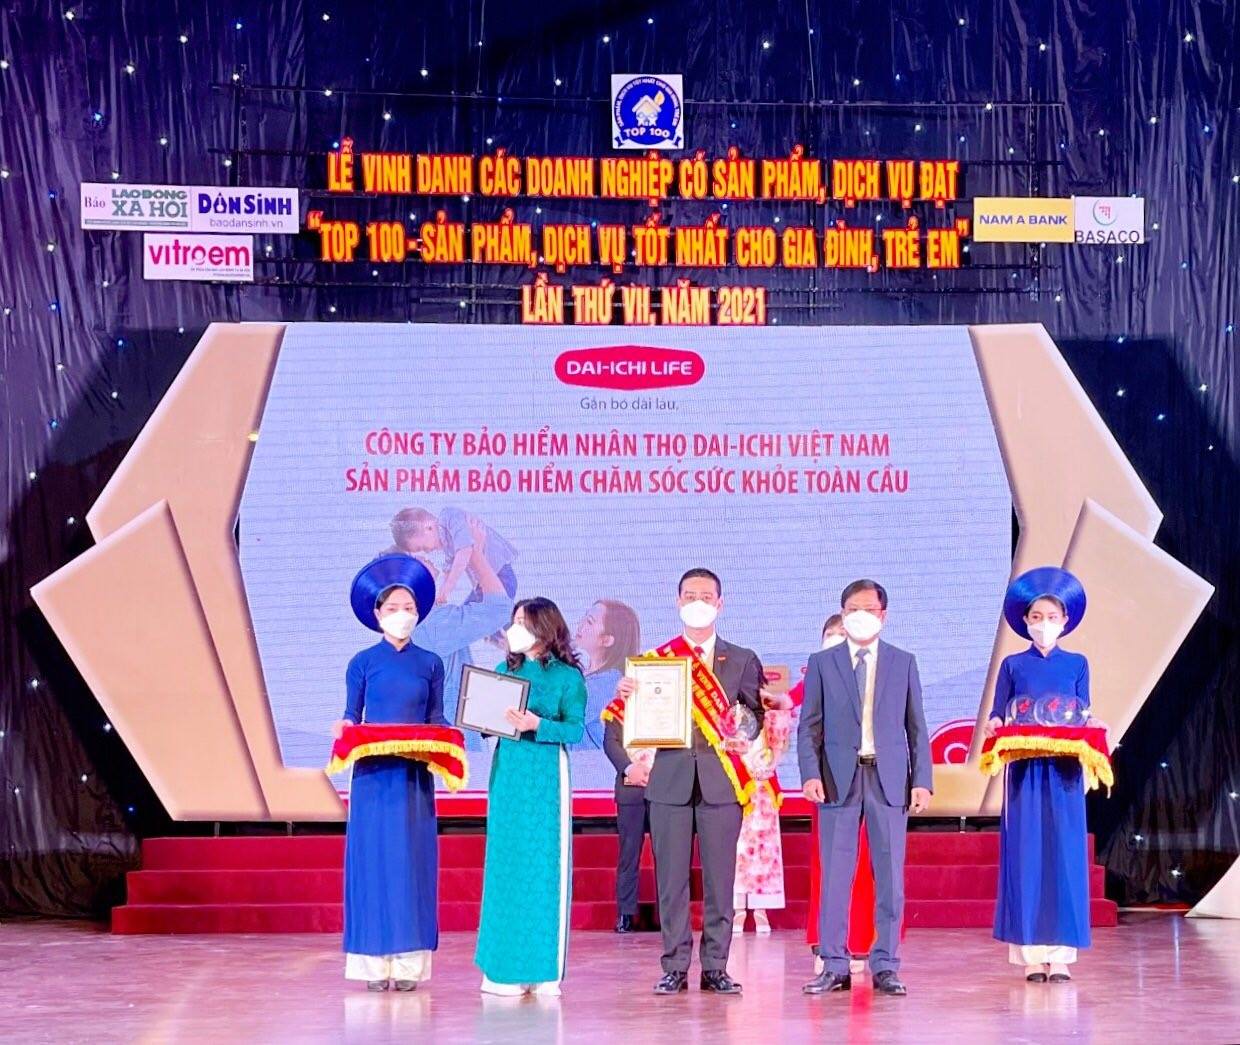 Dai-ichi Life Việt Nam được vinh danh trong “Top 100 - Sản phẩm, Dịch vụ tốt nhất cho Gia đình, Trẻ em” năm 2021...